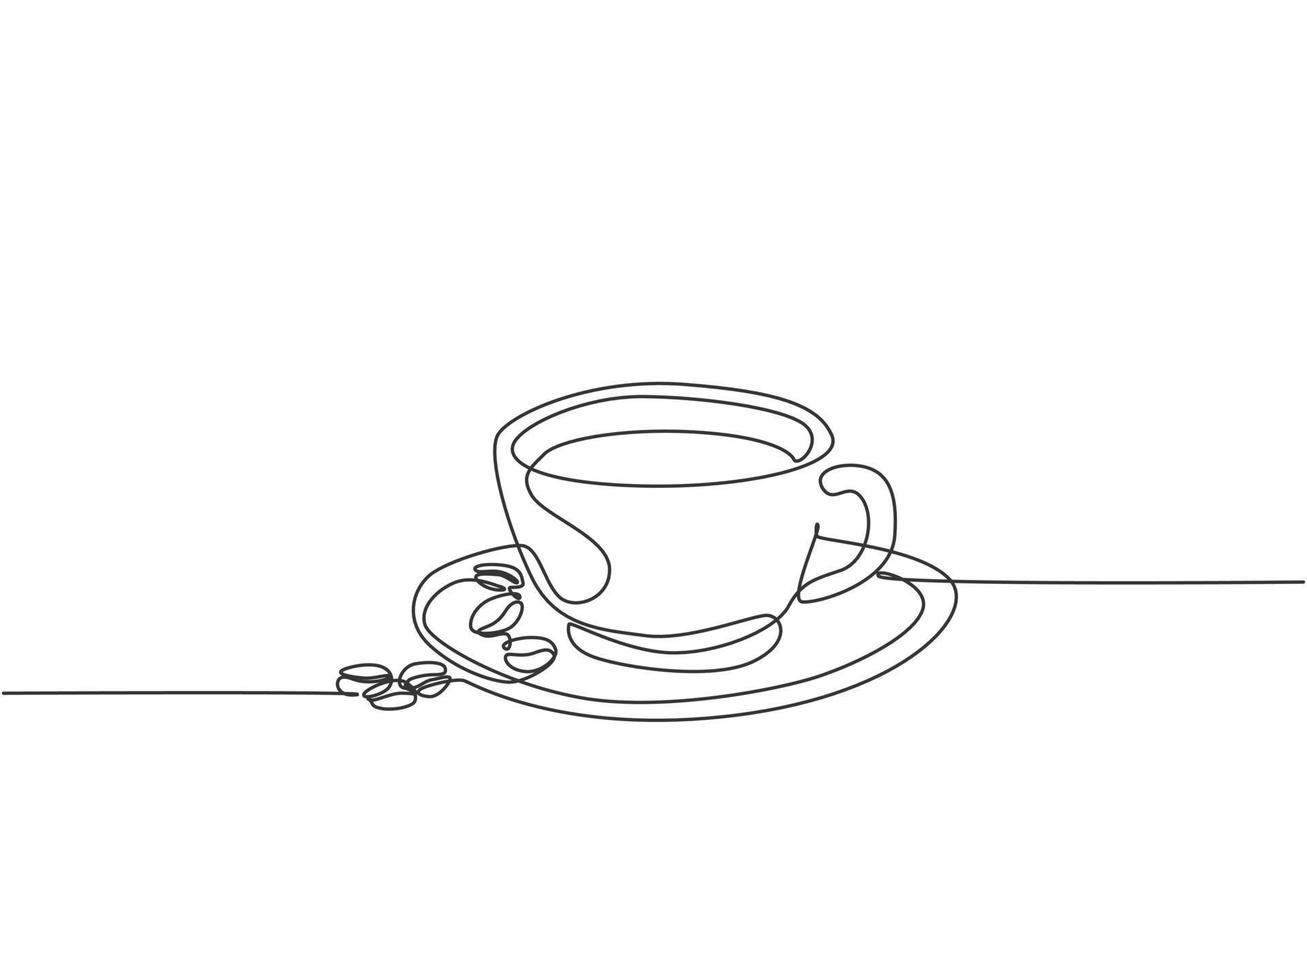 enkele doorlopende lijntekening van een kopje koffiedrank met koffiebonen op keramische onderzetter en tafel. koffiedrank concept display voor coffeeshop. ontwerpillustratie met één lijntekening vector